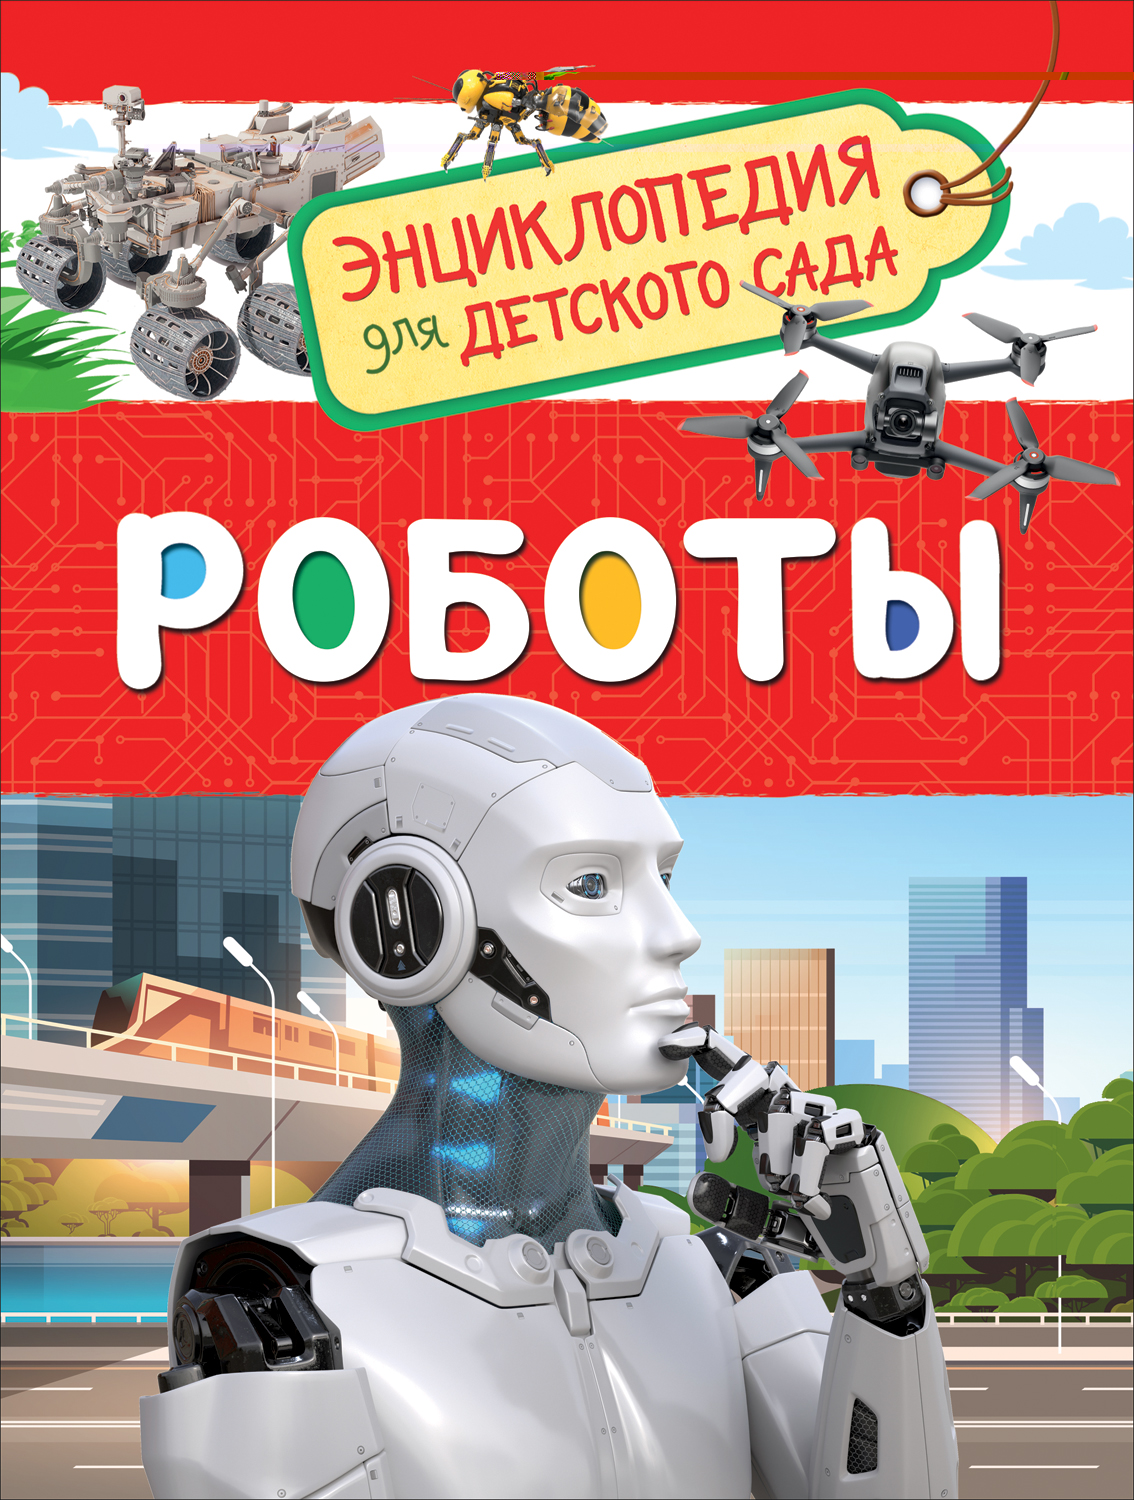 Энциклопедия для детского сада Роботы